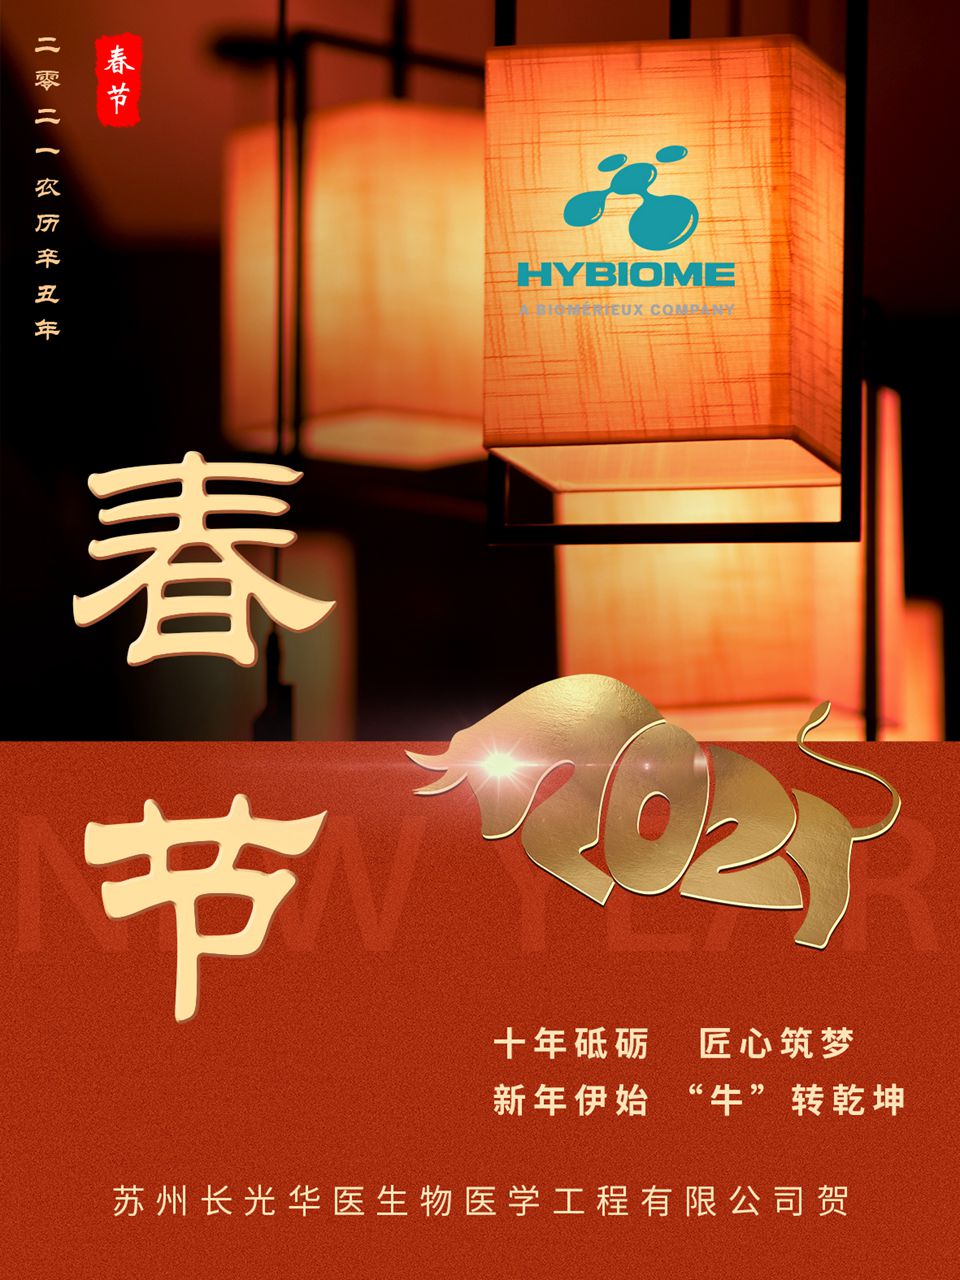 苏州长光华医生物医学工程有限公司祝大家新年快乐，万事顺遂！